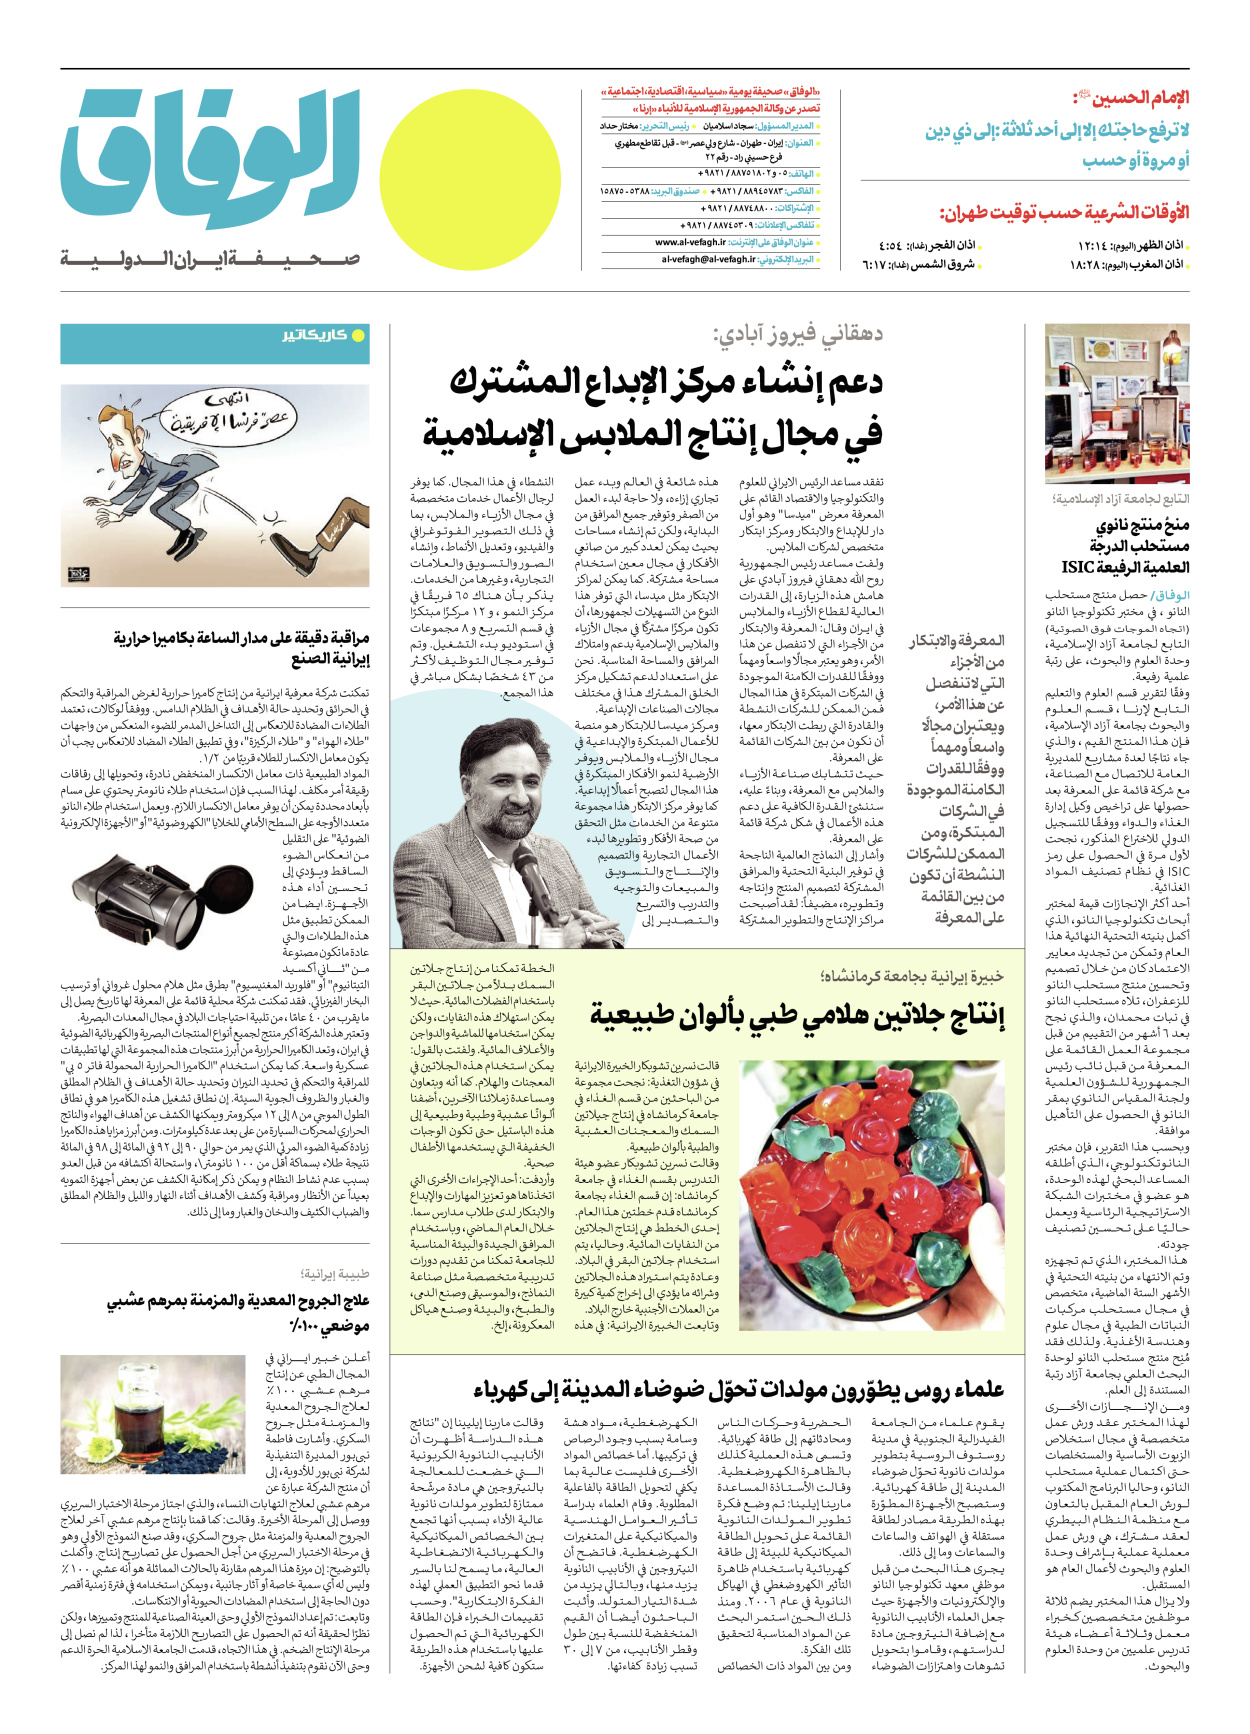 صحیفة ایران الدولیة الوفاق - العدد سبعة آلاف ومائتان - ١٣ مارس ٢٠٢٣ - الصفحة ۱۲